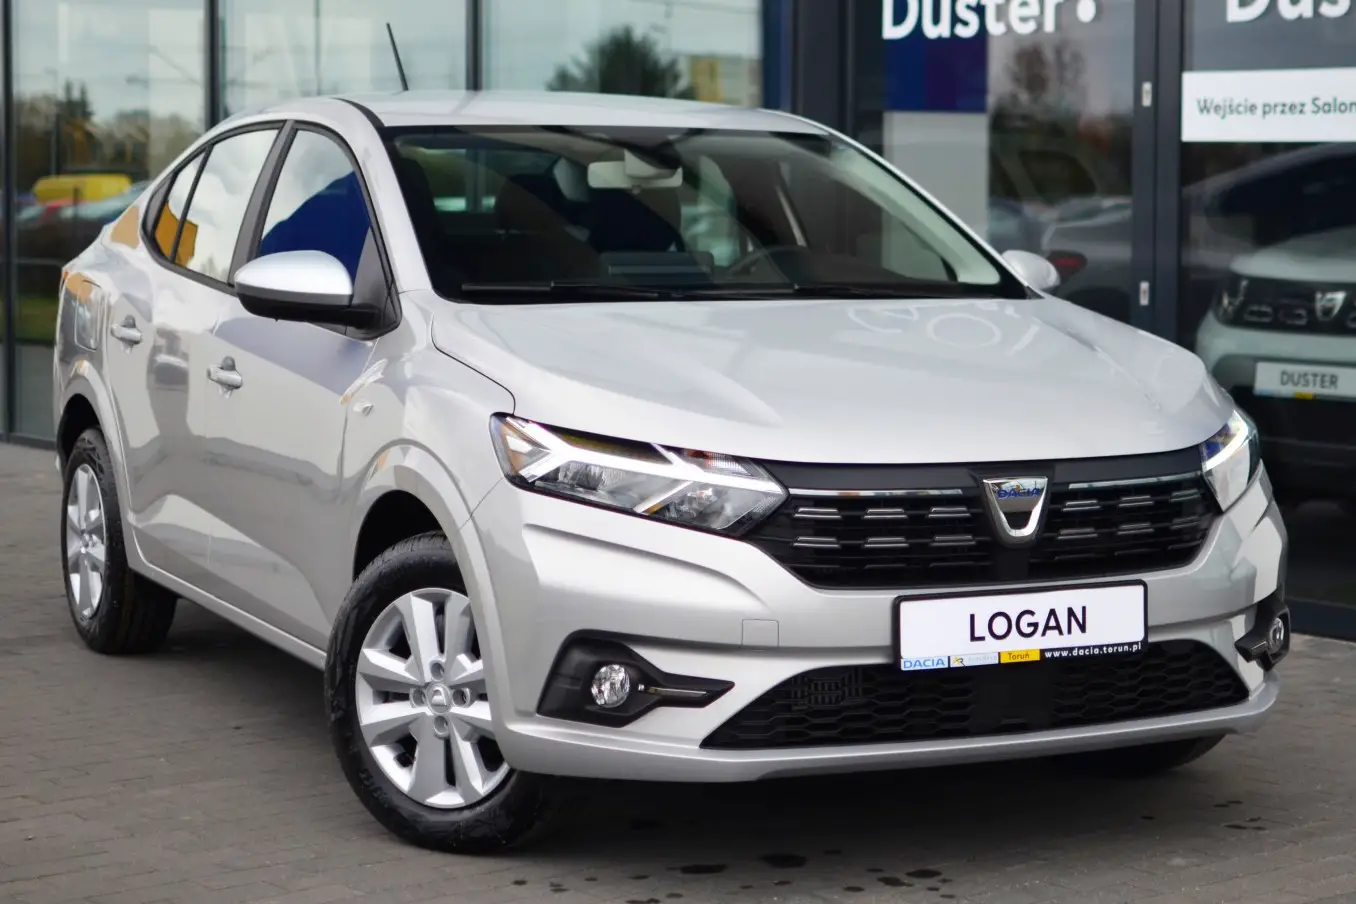 Étapes à suivre pour renouveler les plaquettes de freinage sur la Dacia Logan